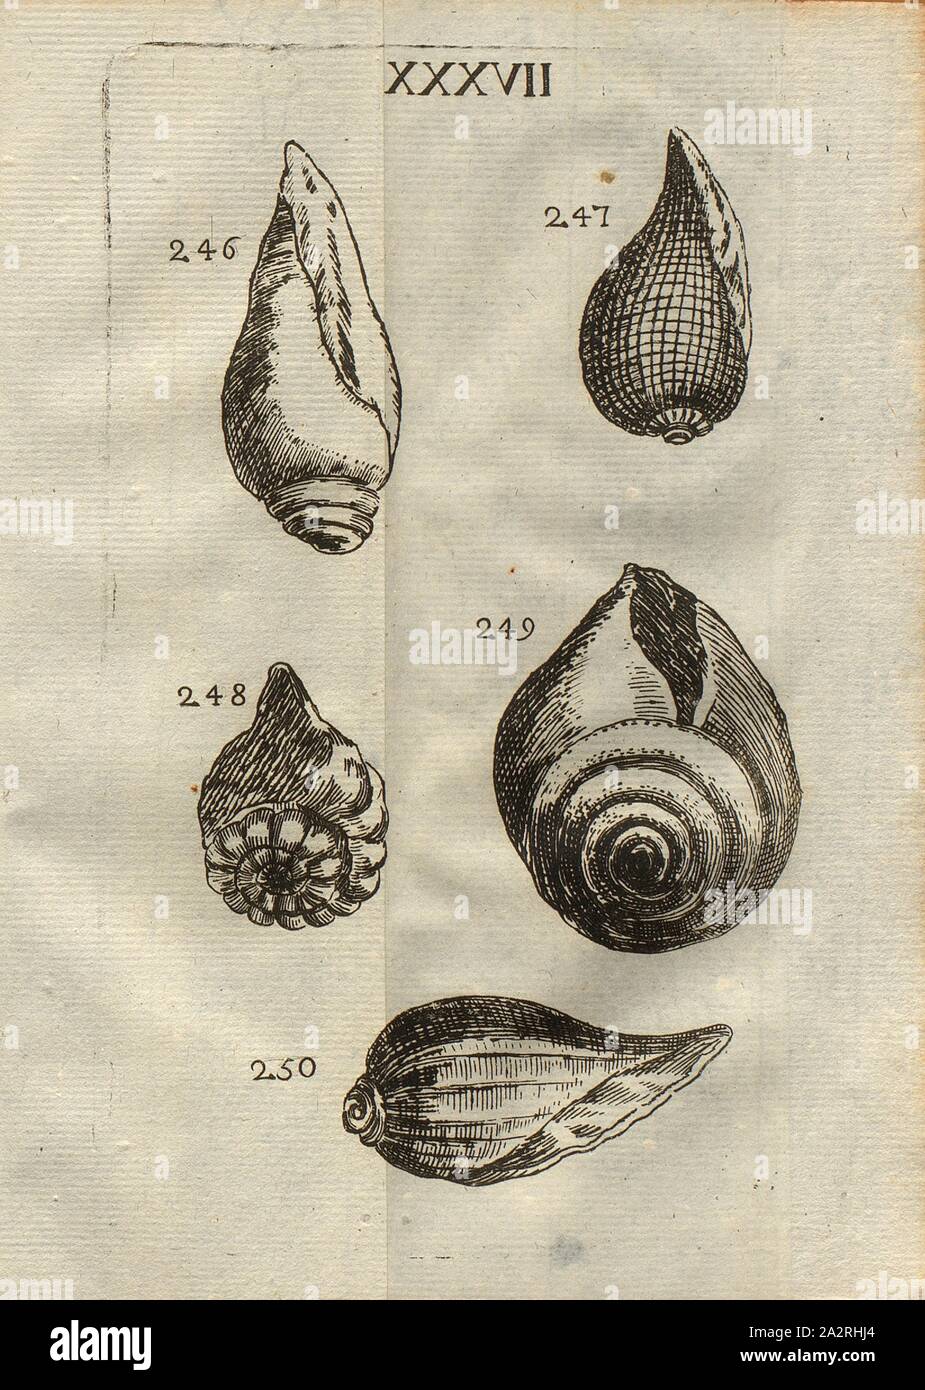 Various species of snails, Echinophorite, Classe III, Pl. XXXVII, Fig. 246: Escargot cylindrique, à grandes levres, Fig. 247: Escargot ventru, rayé en petits quarrés, Fig. 248: Escargot appellé Echinophorite, Fig. 249: Escargot à gros ventre, & à large ouverture, fig., 250: Escargot à larges côtes, rayé, pl. XXXVII, after p. 312, 1778, Louis Bourget: Traité des pétrifications. Paris: Jombert, 1778 Stock Photo